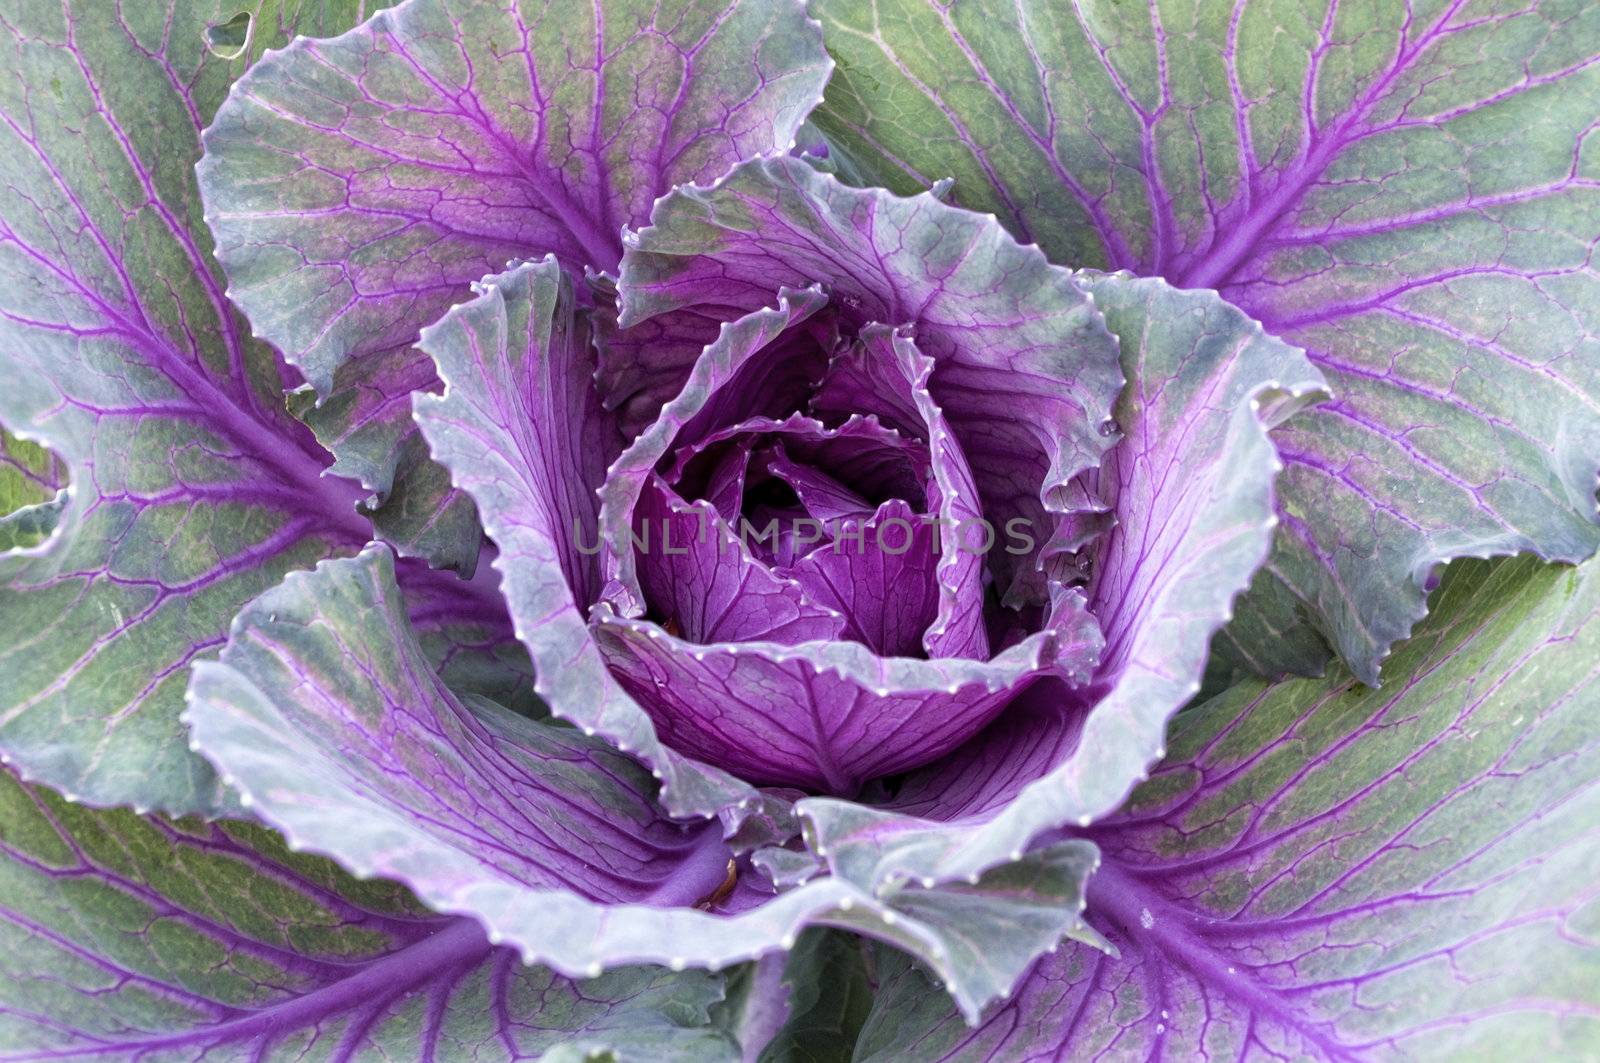 Cabbage Veins in Purple by watamyr